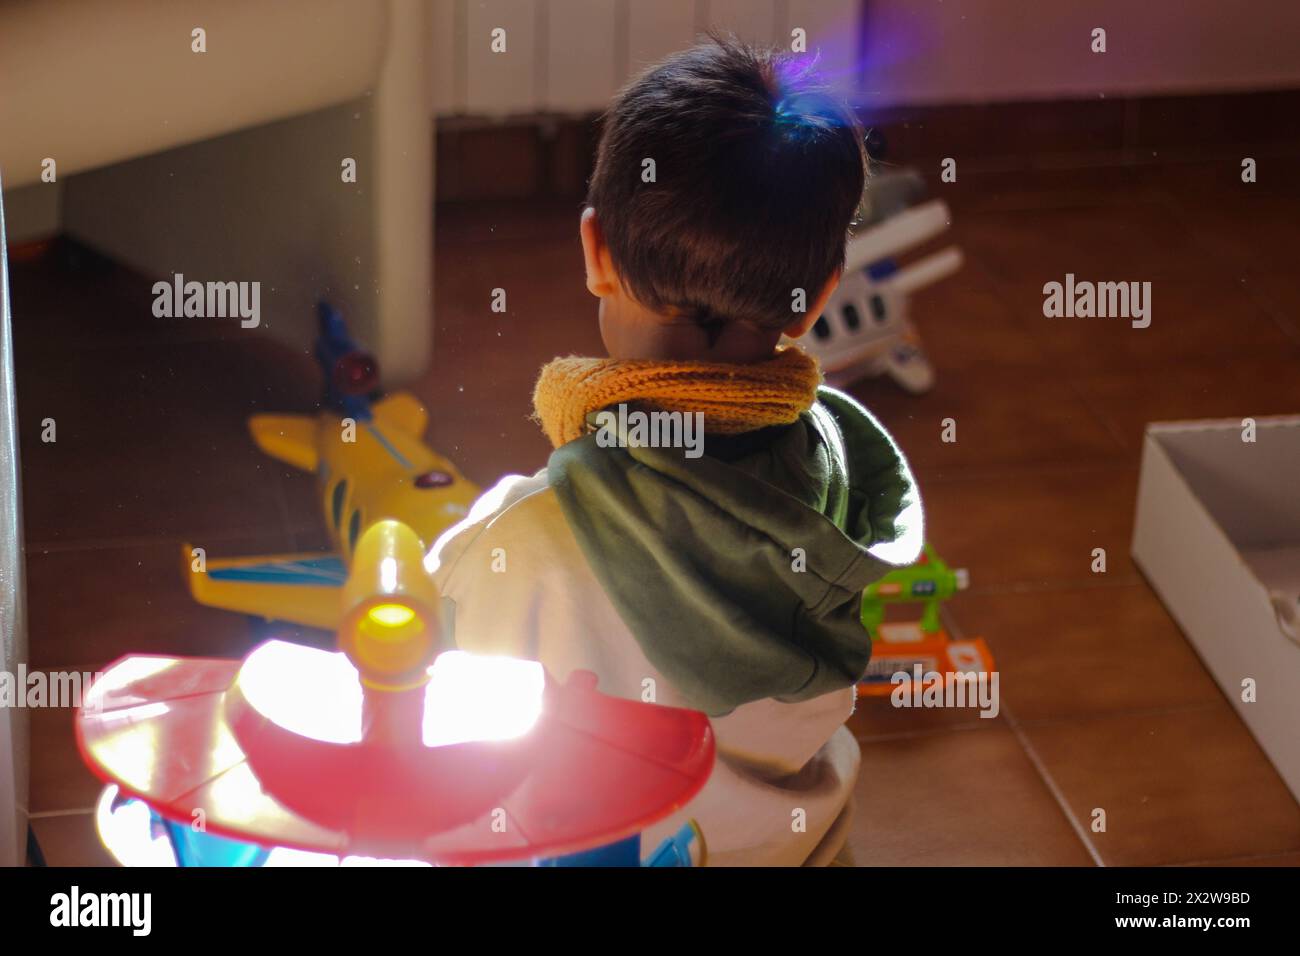 Kinderwundern: Kleines Kind umgeben von Spielzeugen, gebadet in farbenfrohen Kameraflampen. Erleben Sie den Zauber der Kindheit als kleines Kind. Stockfoto